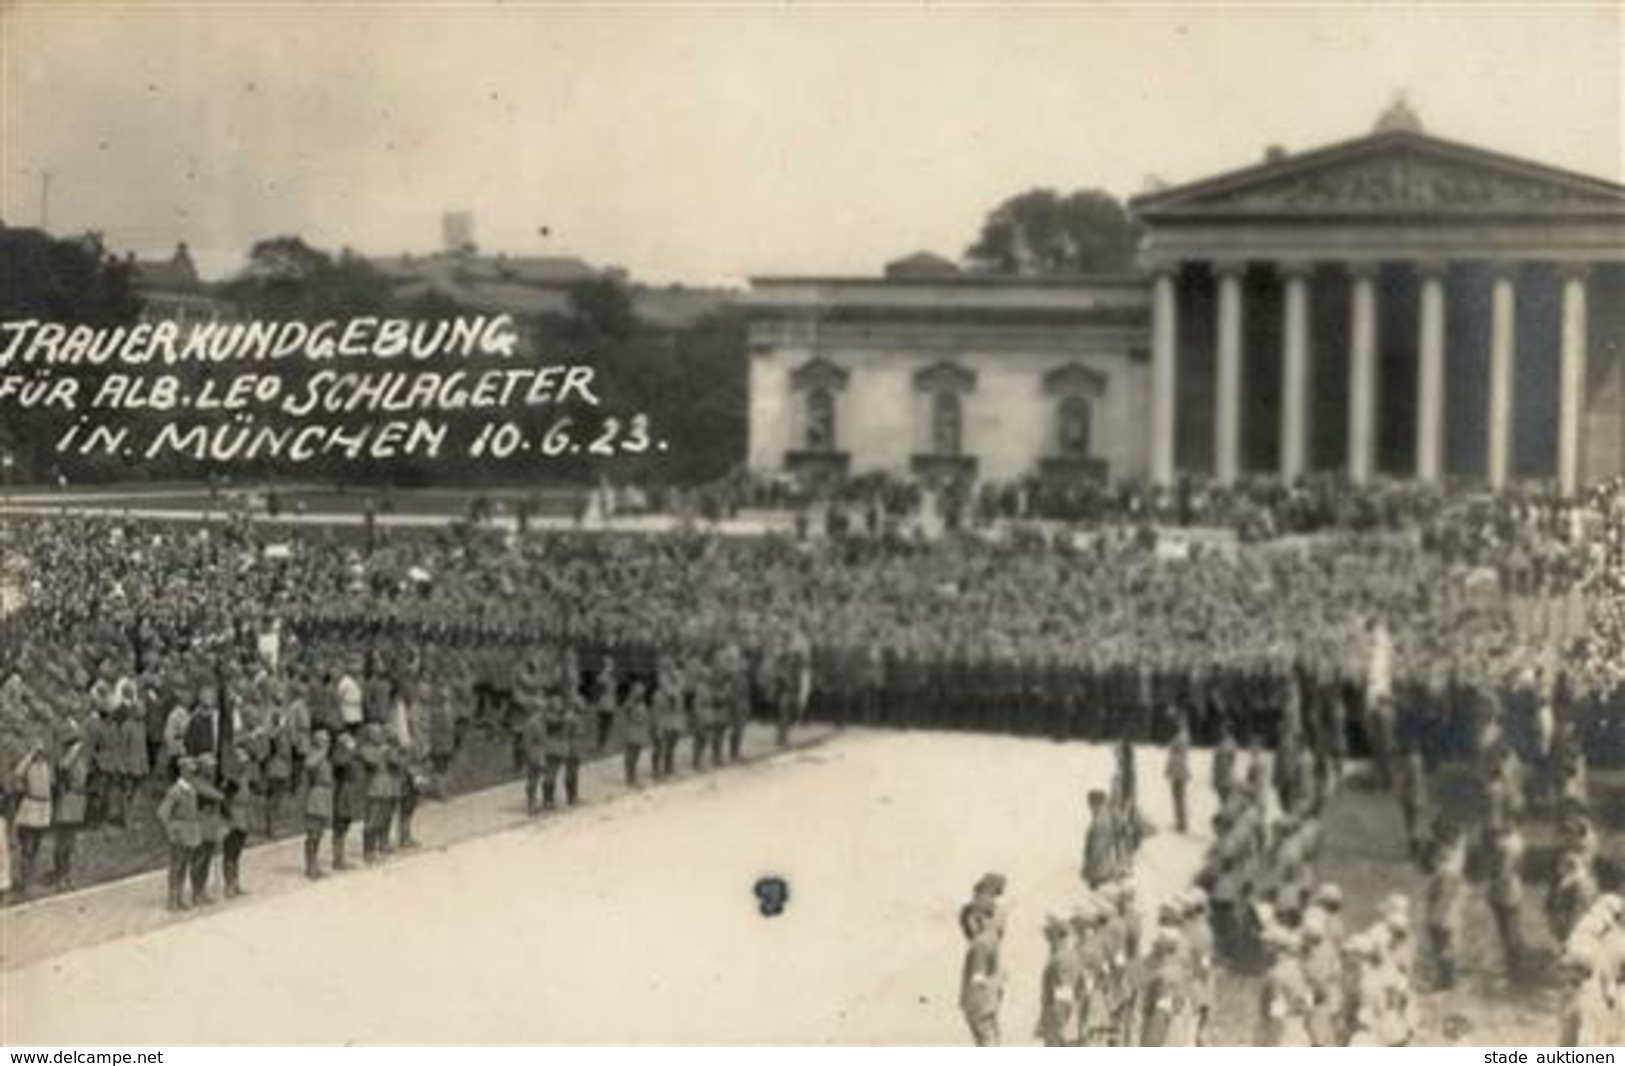 Weimarer Republik München (8000) Trauerkundgebung Alb. Leo Schlageter Foto AK I-II - History